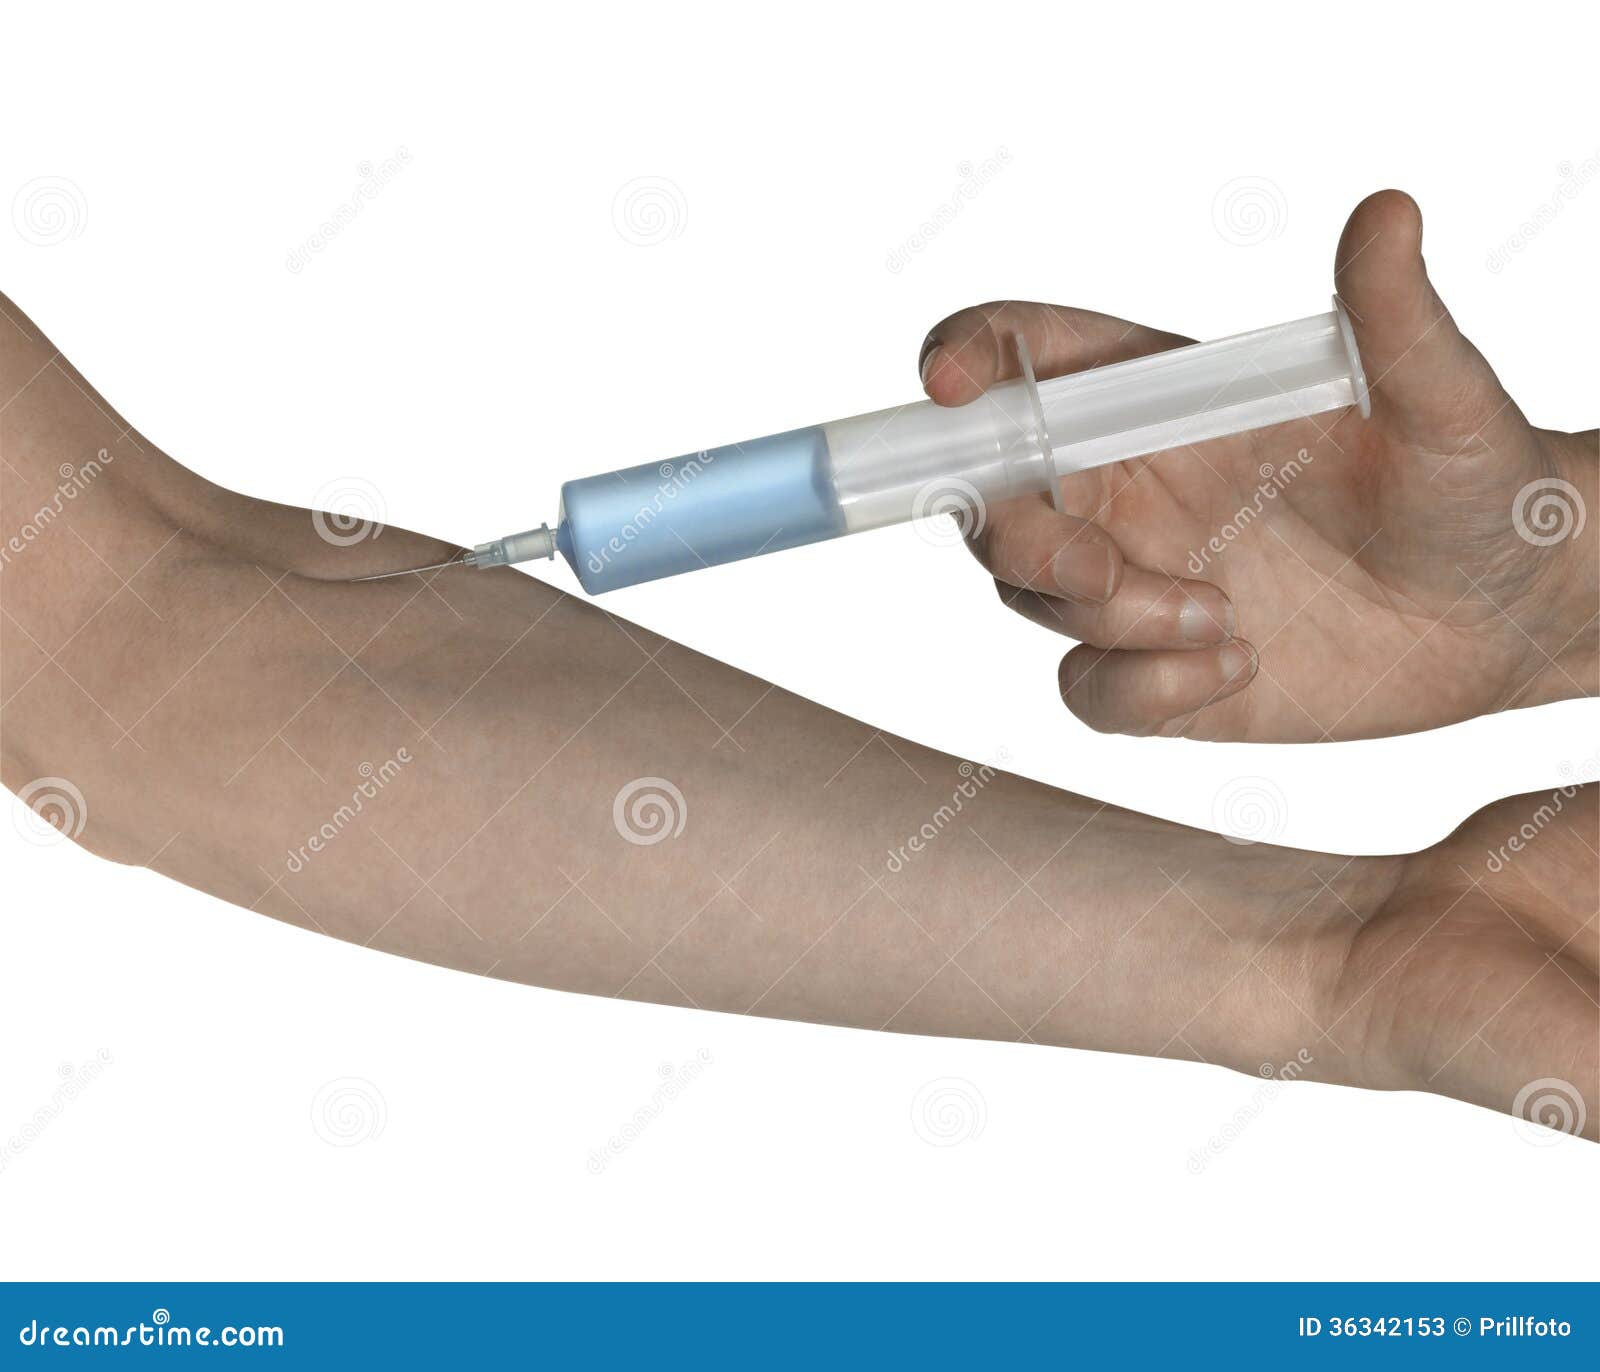 Intravenöse Injektion stockbild. Bild von einspritzen - 36342153